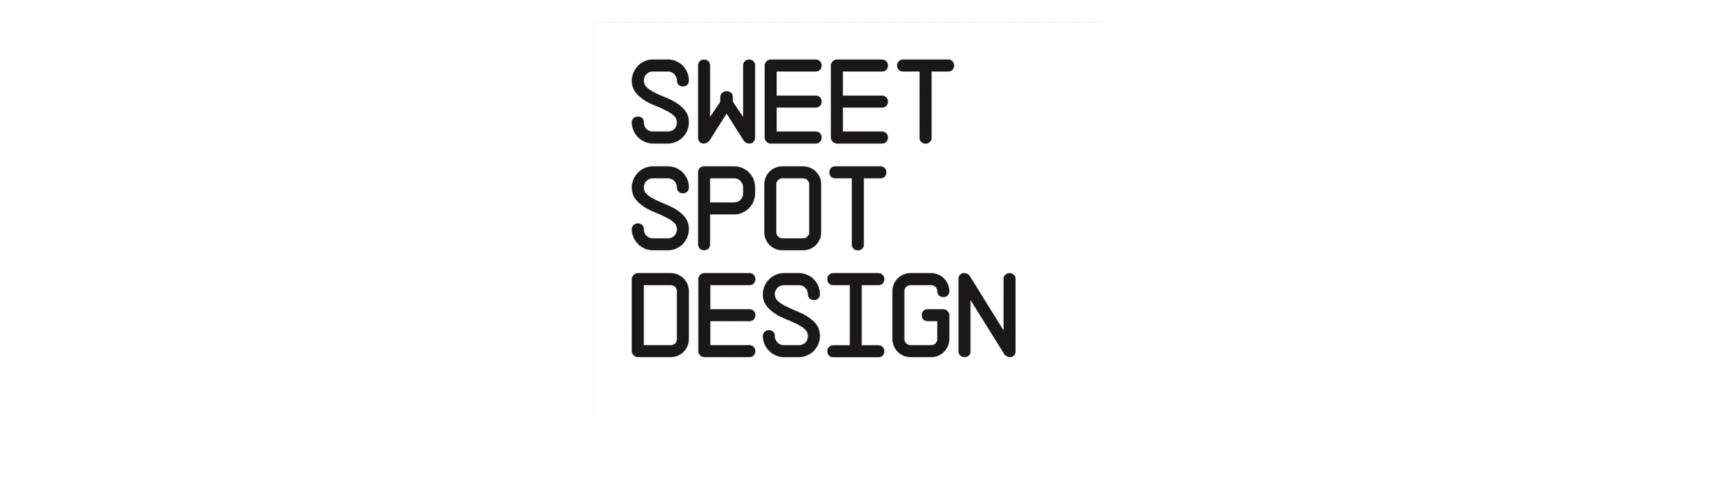 Sweet Spot Design